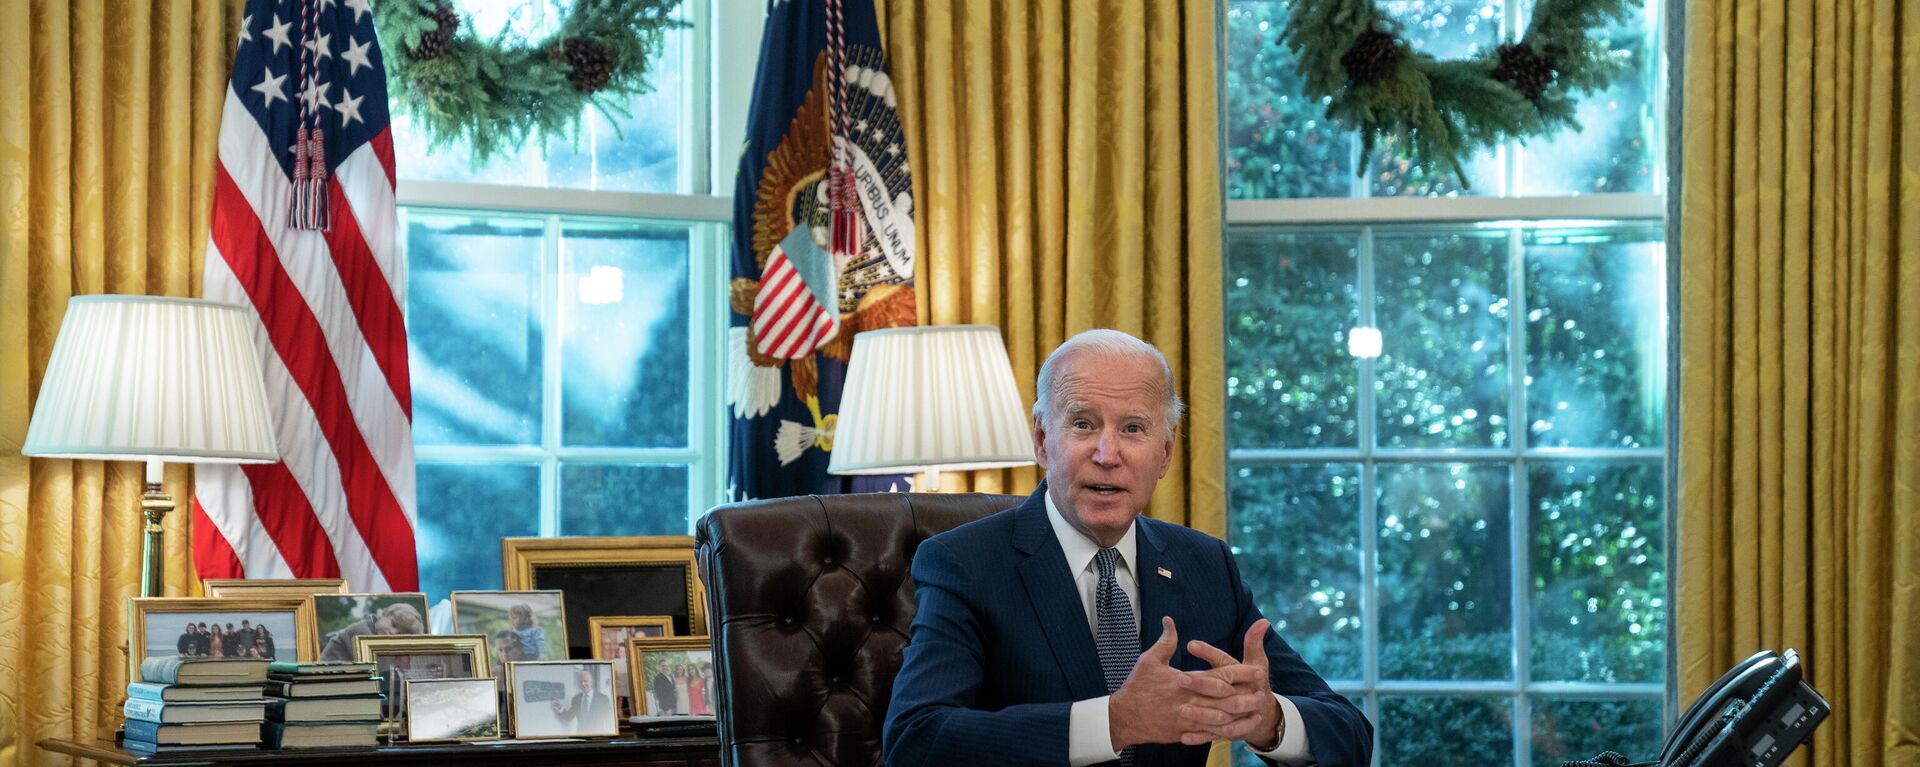 O presidente Joe Biden fala antes de assinar uma ordem executiva para melhorar os serviços do governo, no Salão Oval da Casa Branca, segunda-feira, 13 de dezembro de 2021, em Washington - Sputnik Brasil, 1920, 16.12.2021